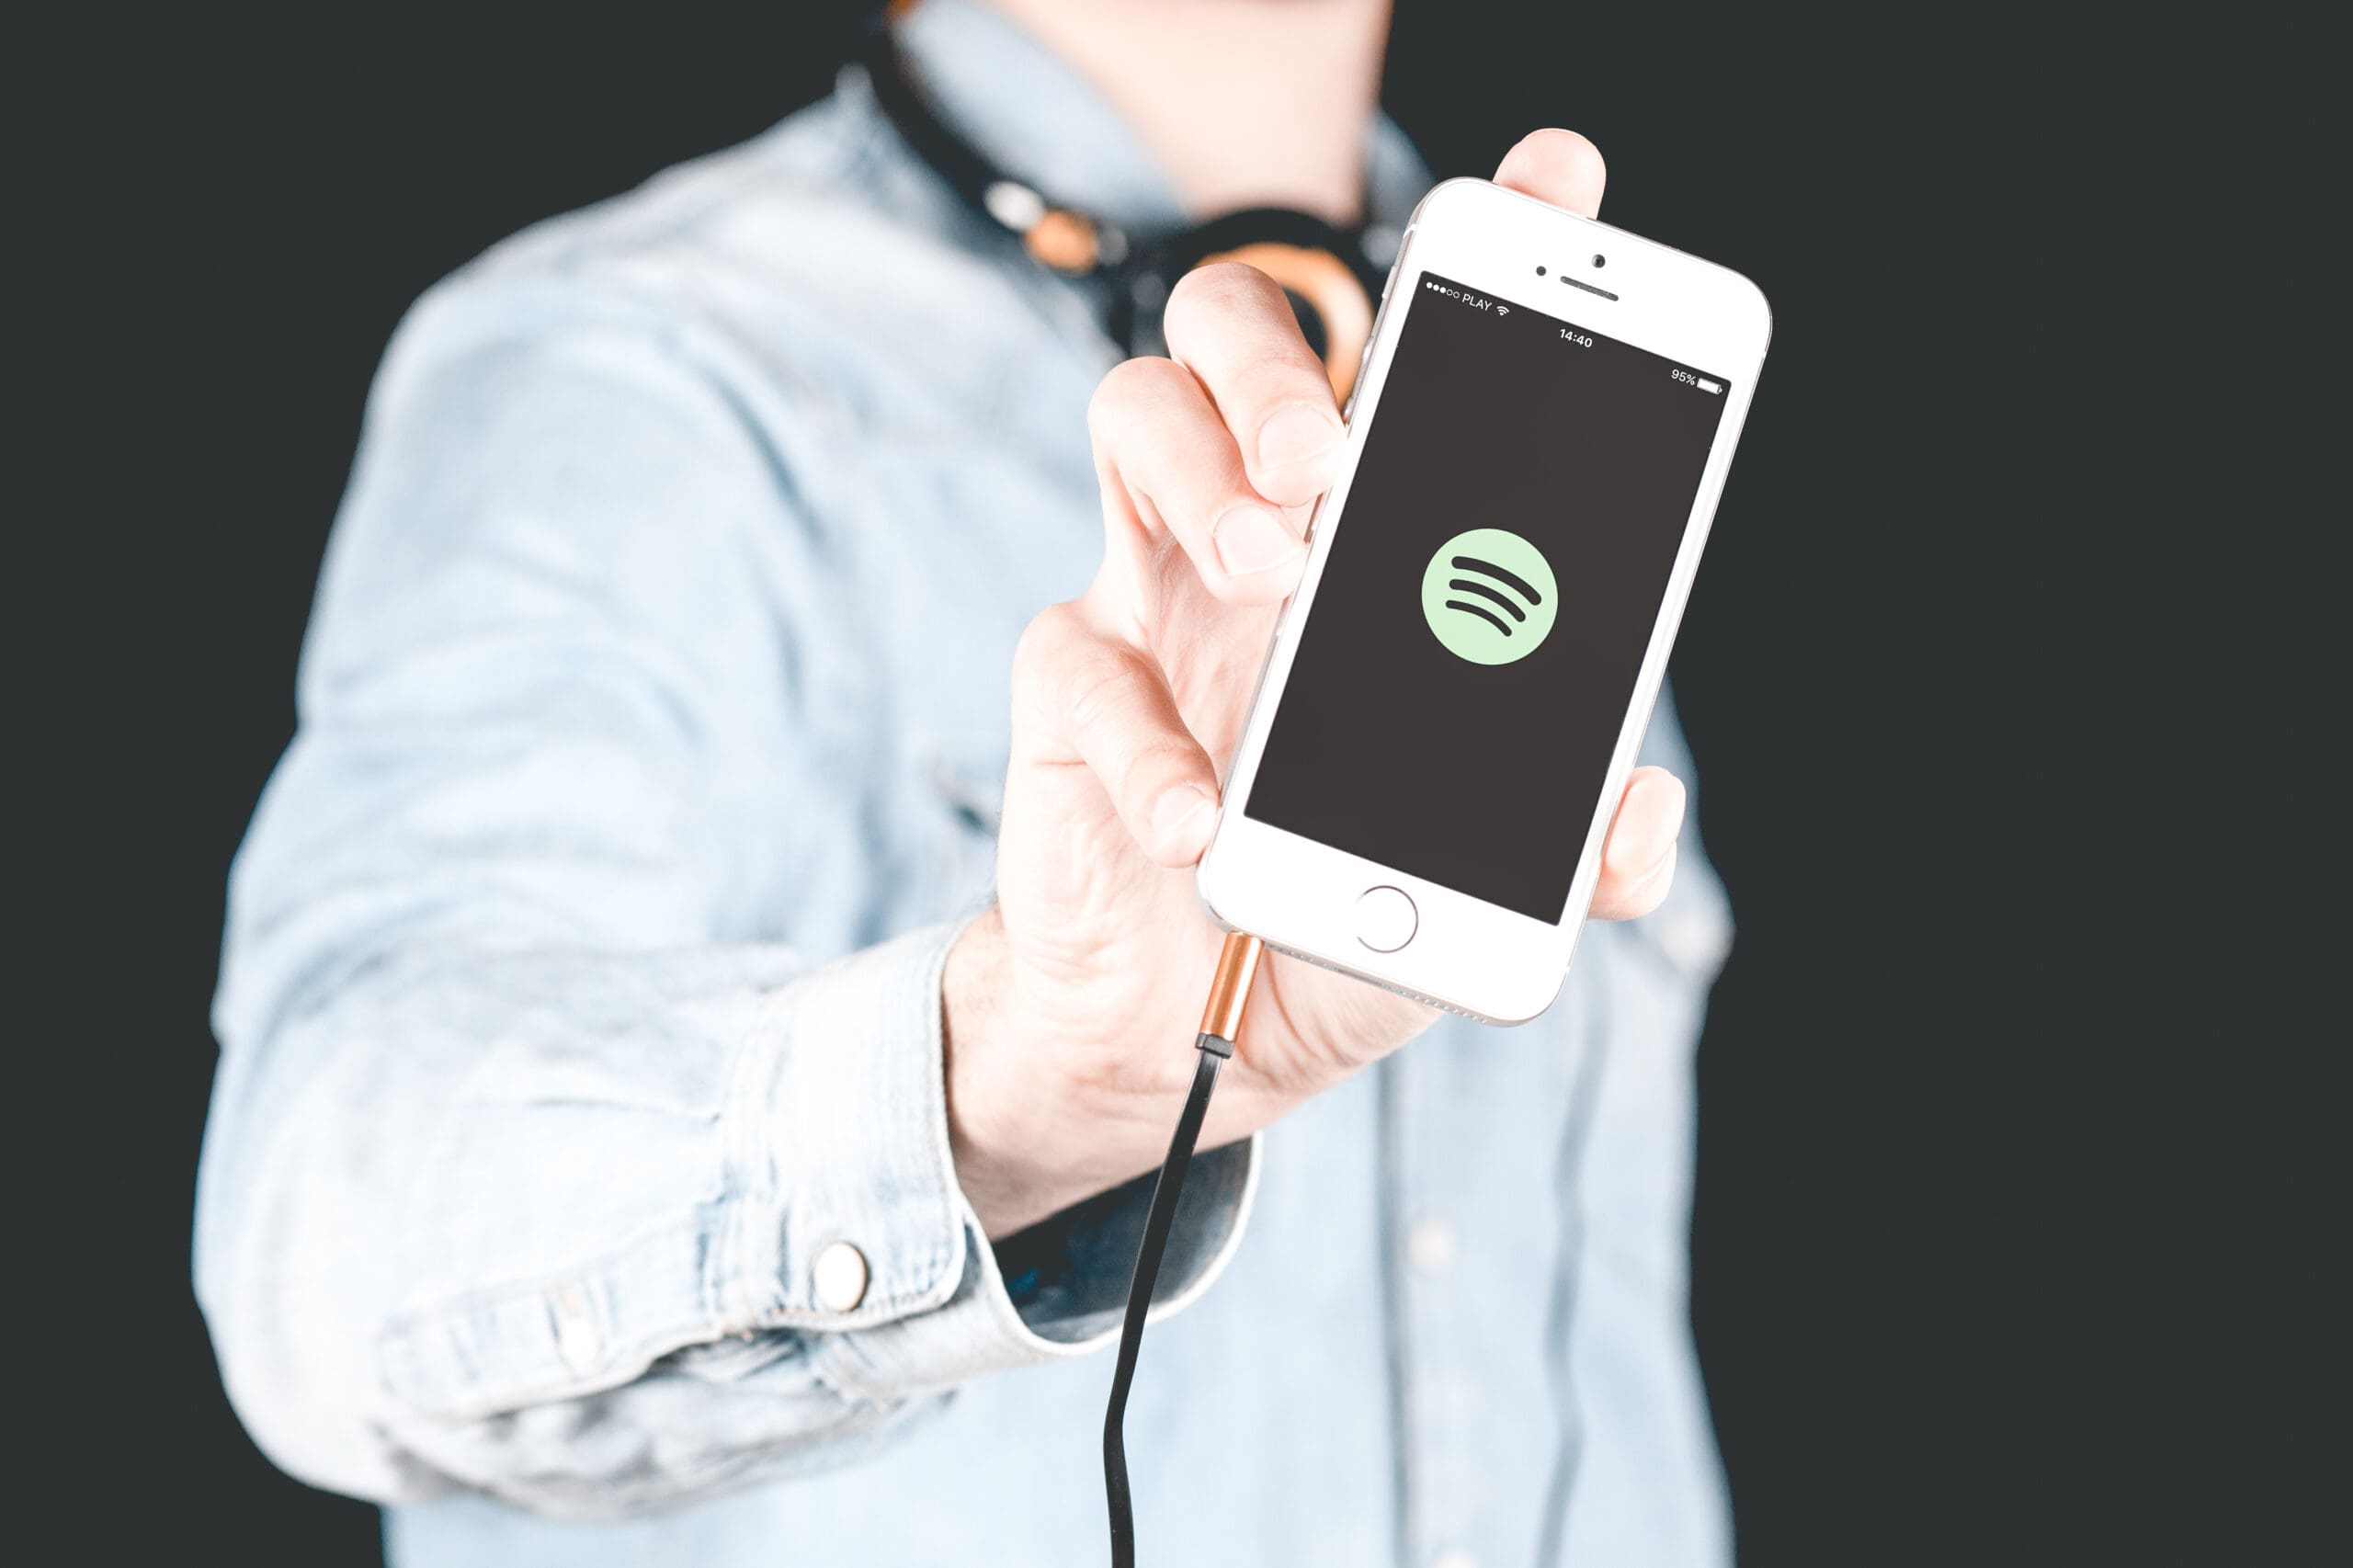 songteksten, Spotify dropt nieuwe functie voor meezingers